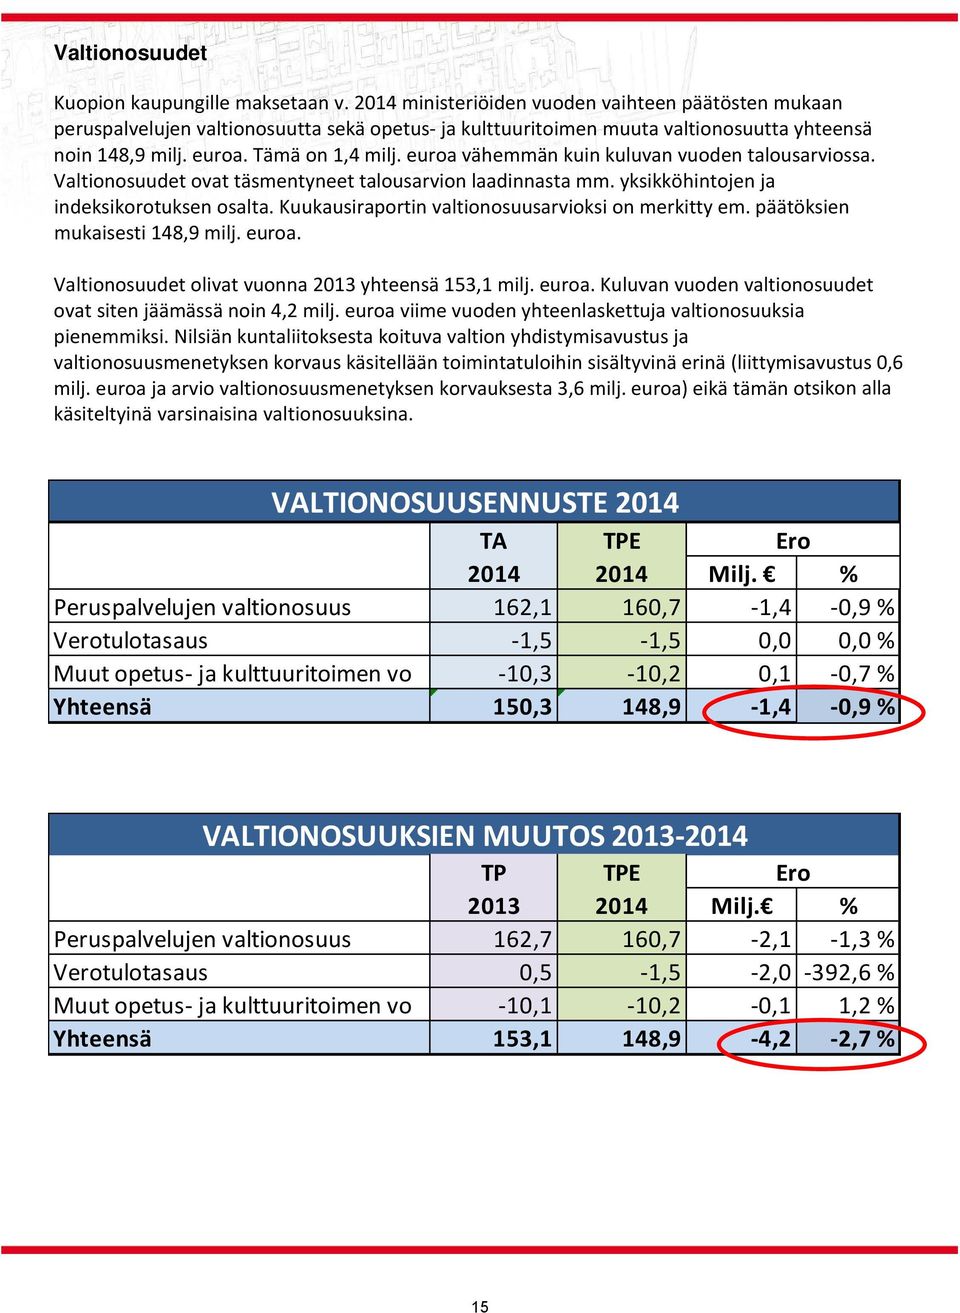 euroa vähemmän kuin kuluvan vuoden talousarviossa. Valtionosuudet ovat täsmentyneet talousarvion laadinnasta mm. yksikköhintojen ja indeksikorotuksen osalta.